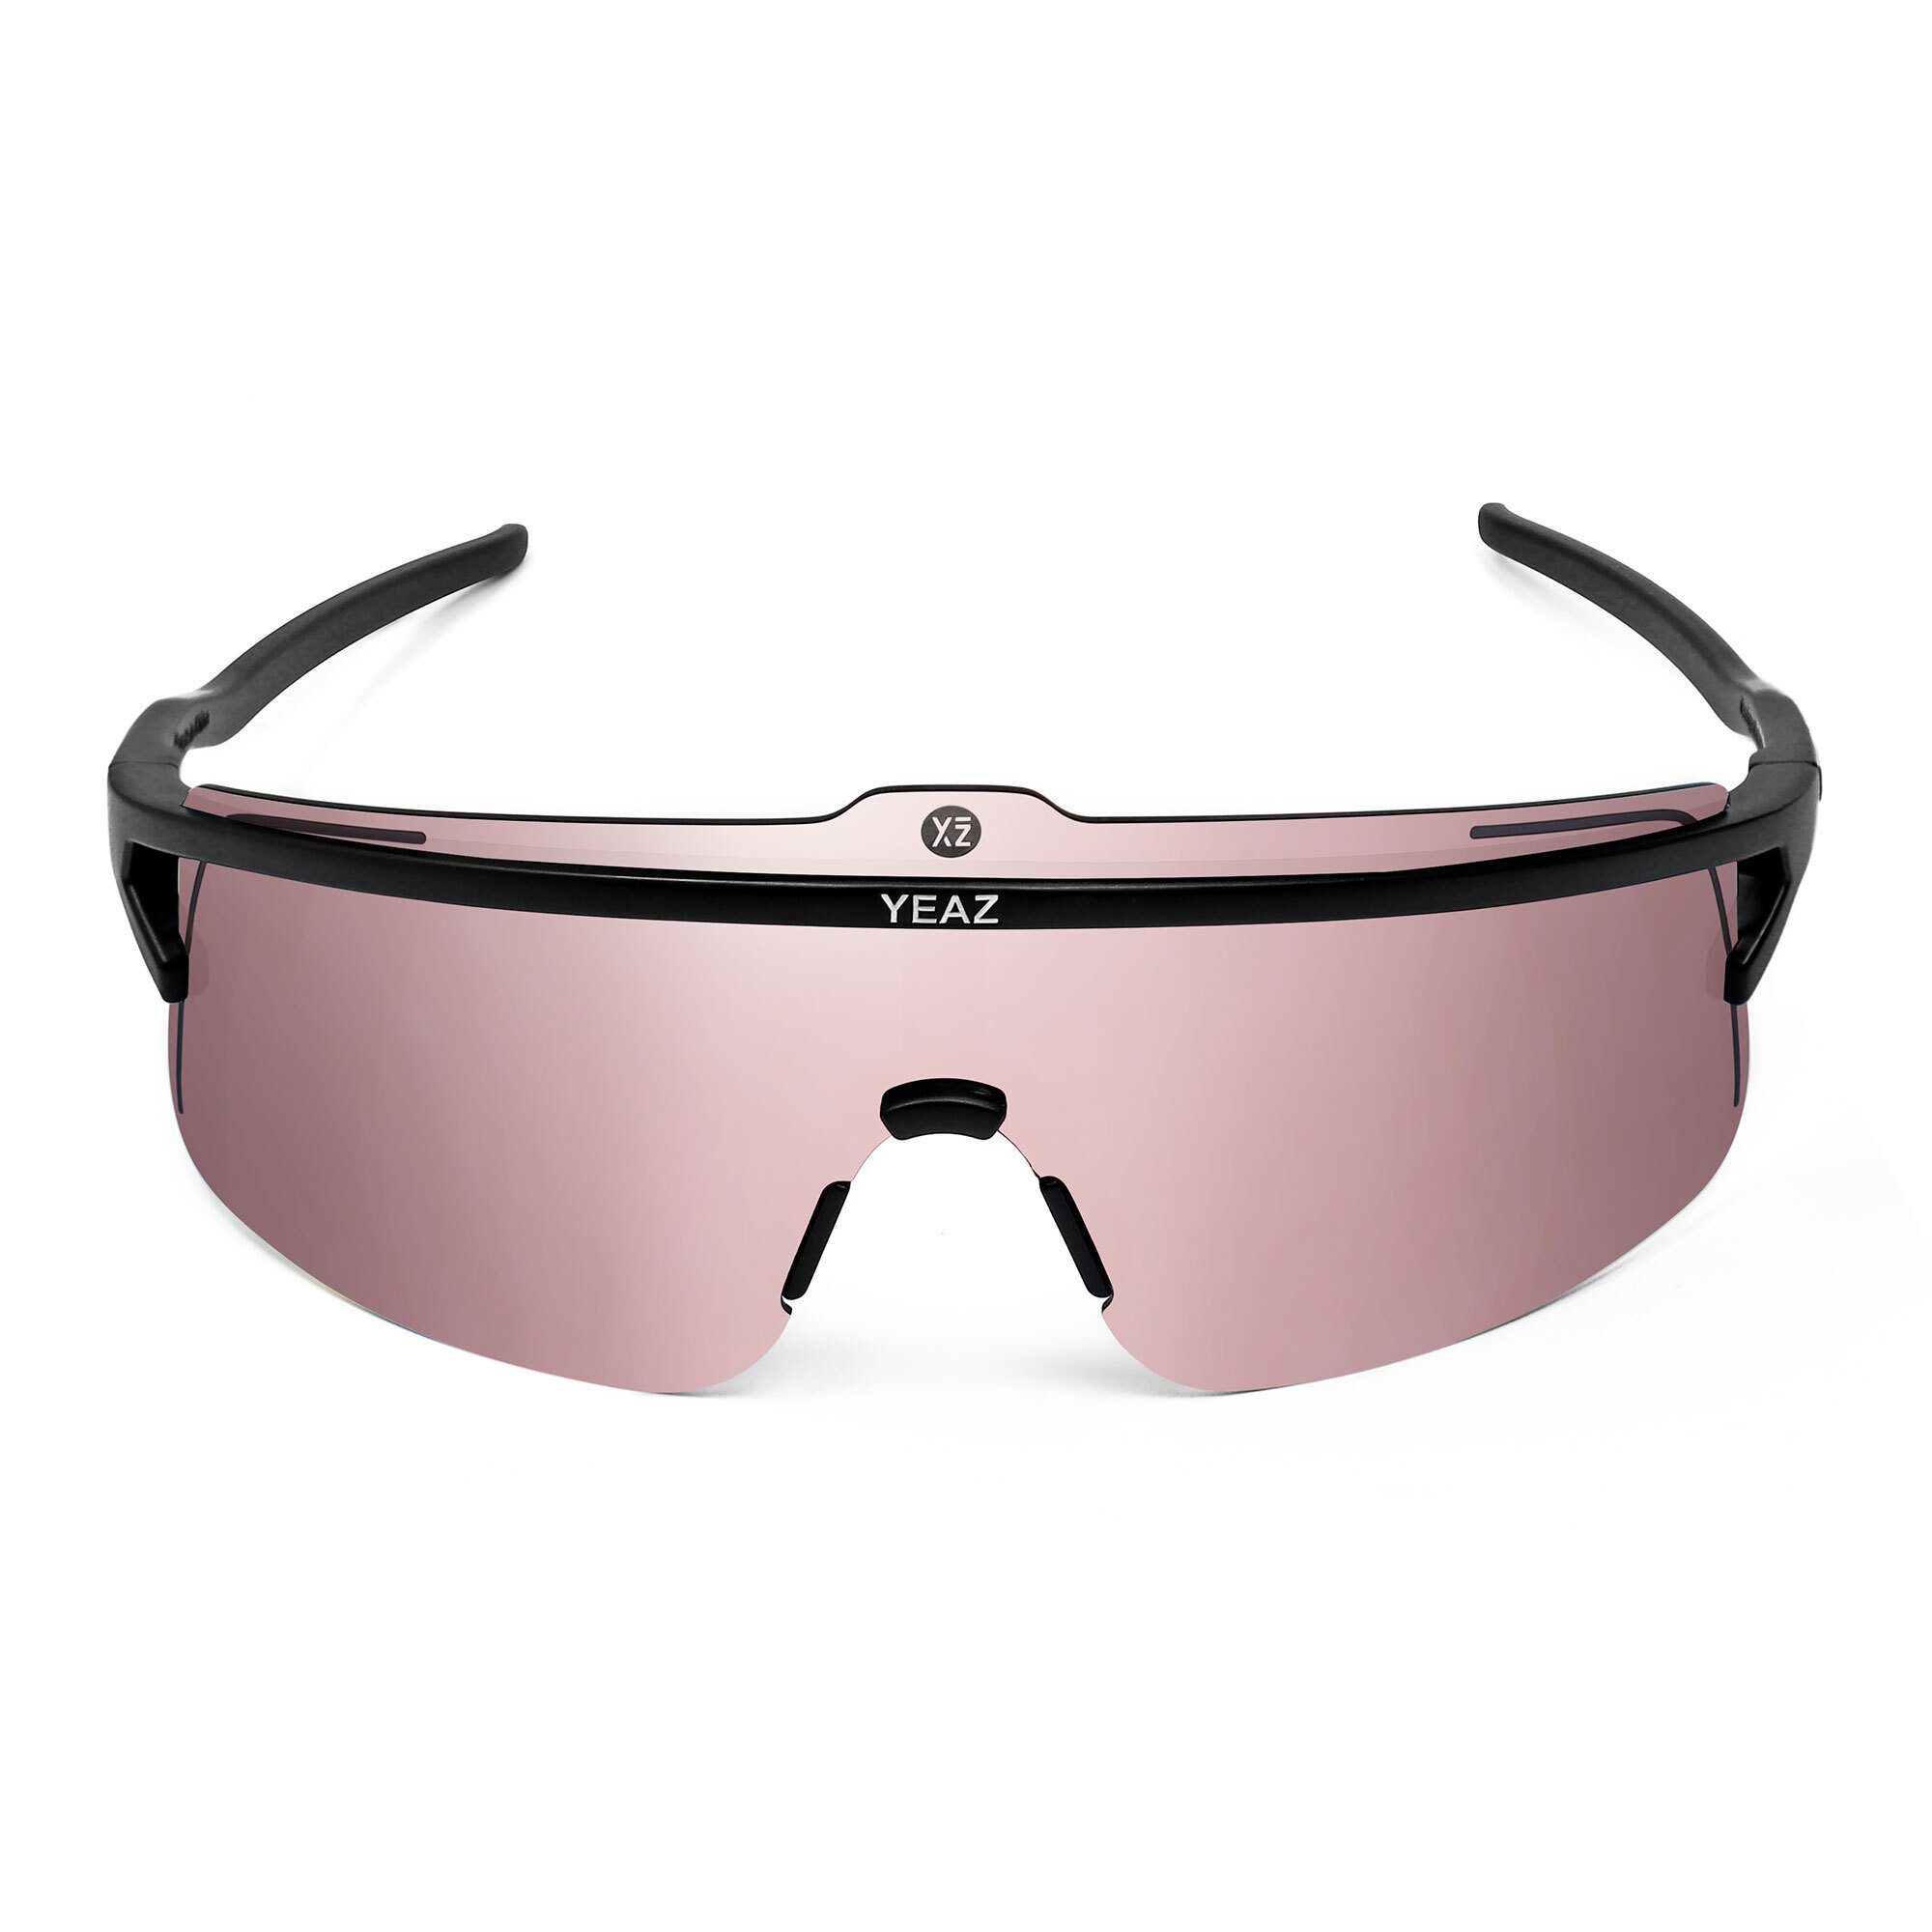 Style perfekte Erlebe Komfort SUNSHADE Sportbrille black/silver, und Schwarz/Roségold Sicht, YEAZ sport-sonnenbrille